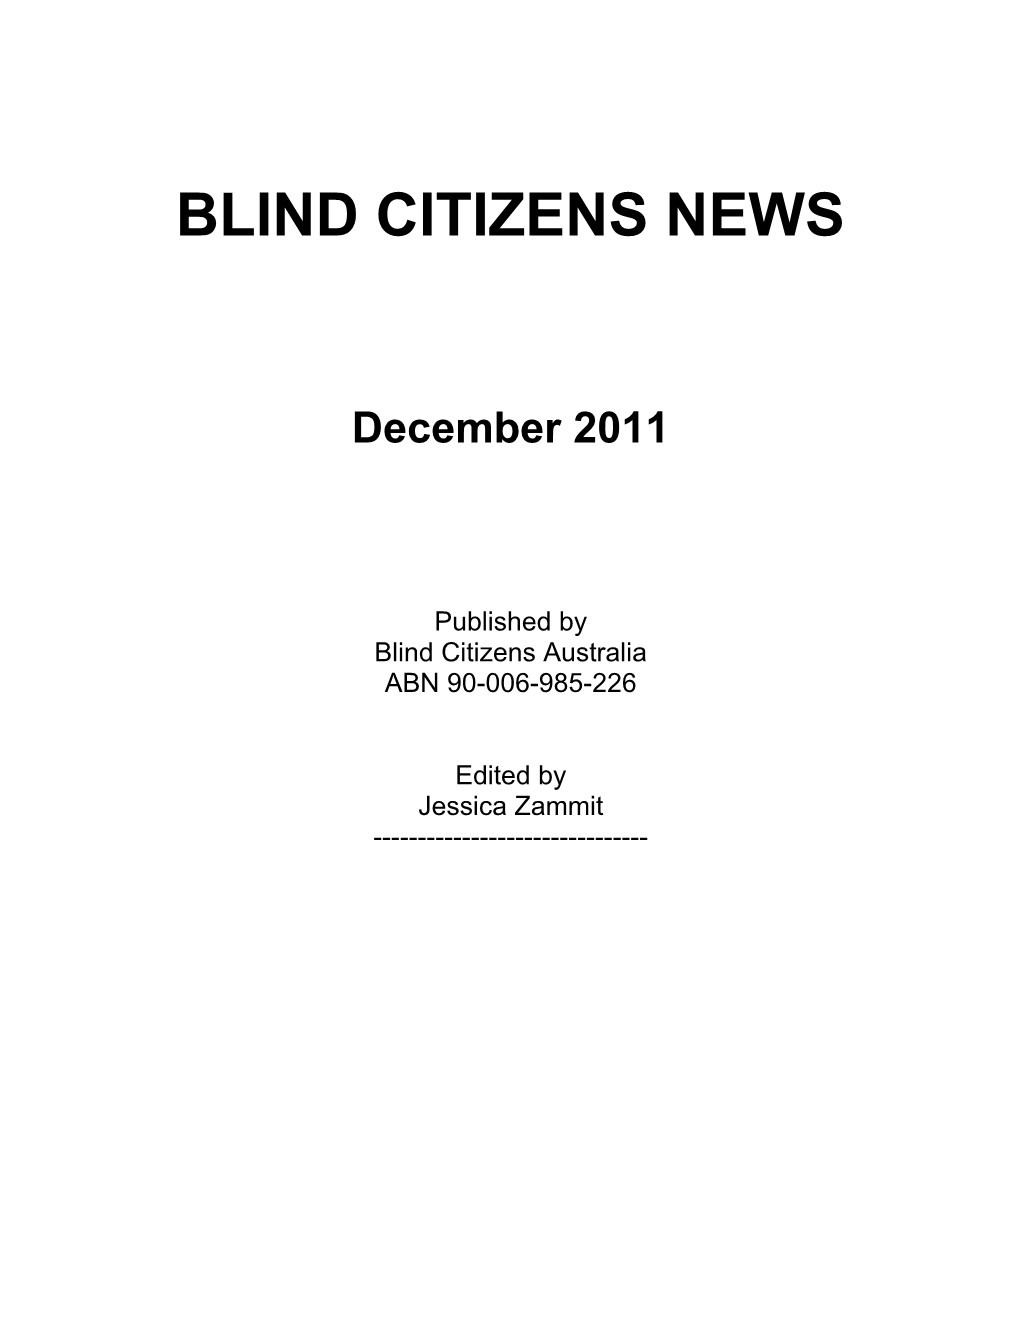 Blind Citizens News